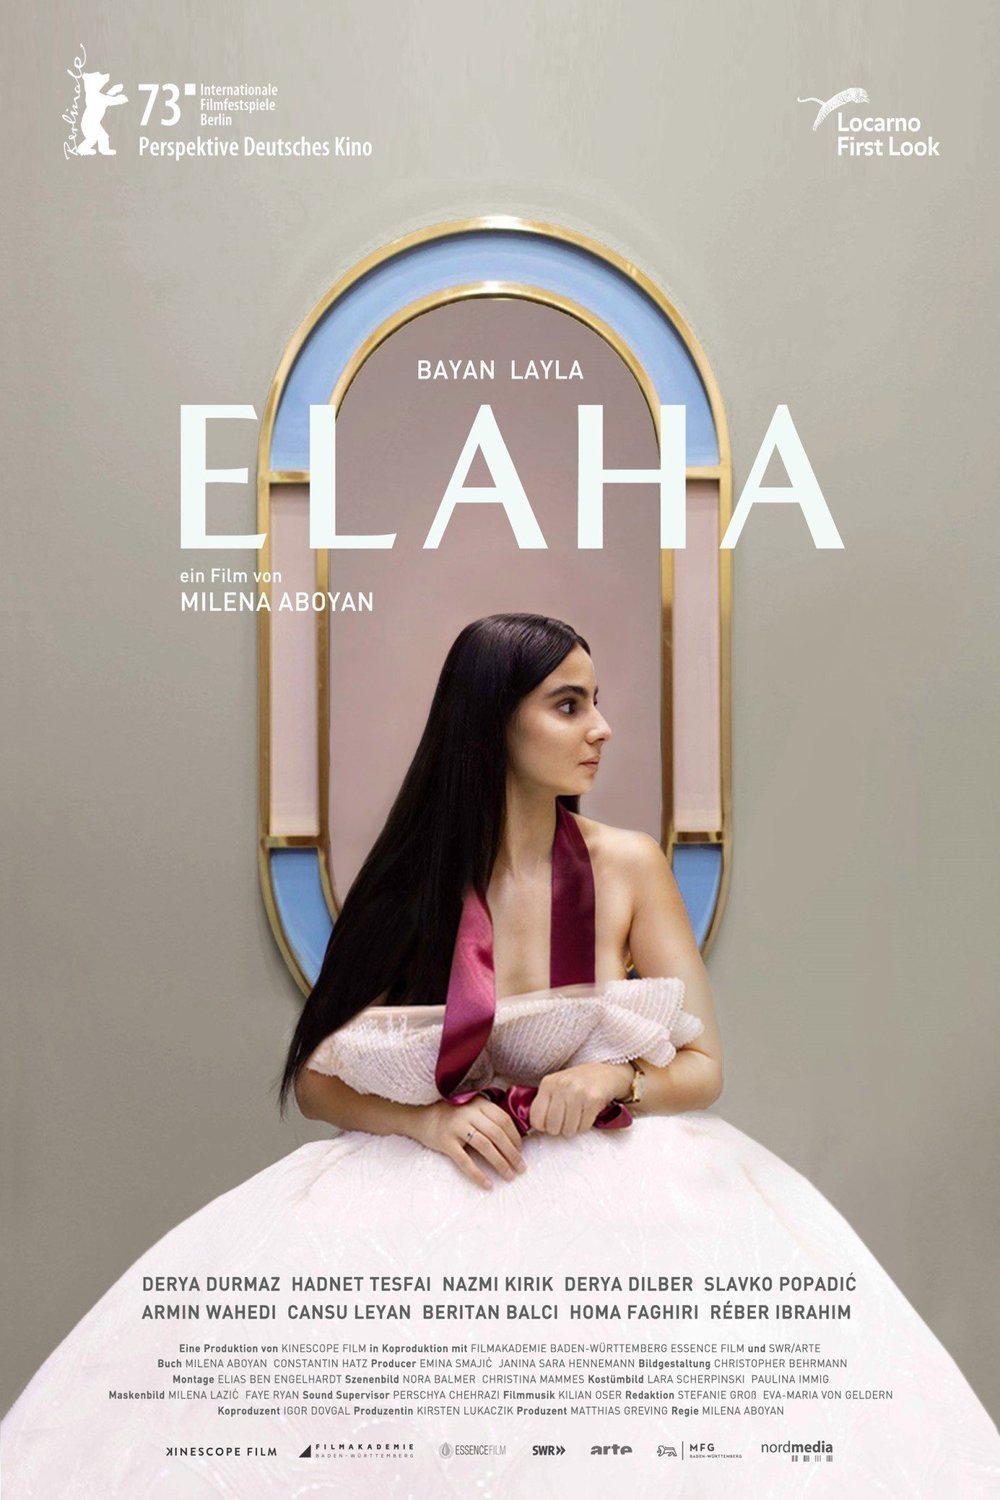 German poster of the movie Elaha